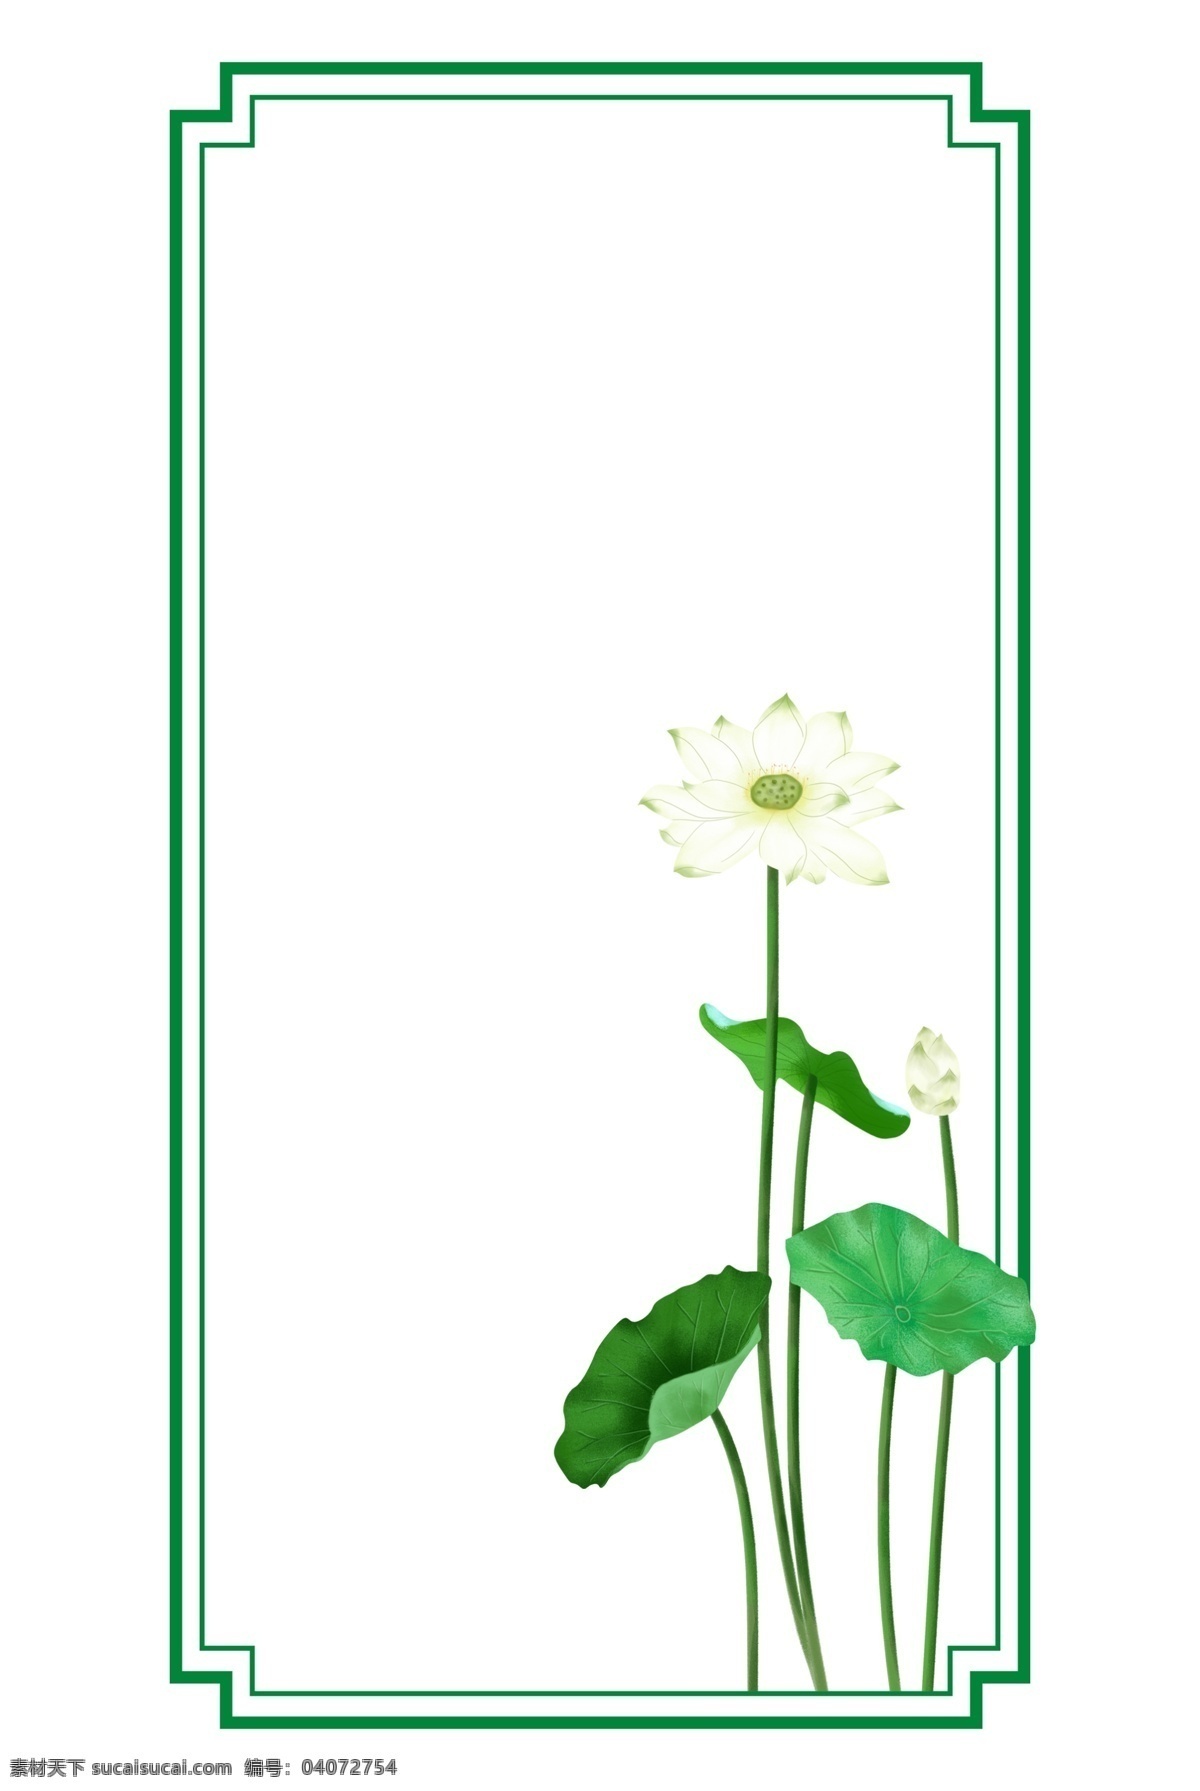 绿色 中国 风 荷花 边框 绿色边框 荷叶 中式边框 中国风 莲花 叶子 植物边框 海报边框 手绘荷花 花朵 白莲花